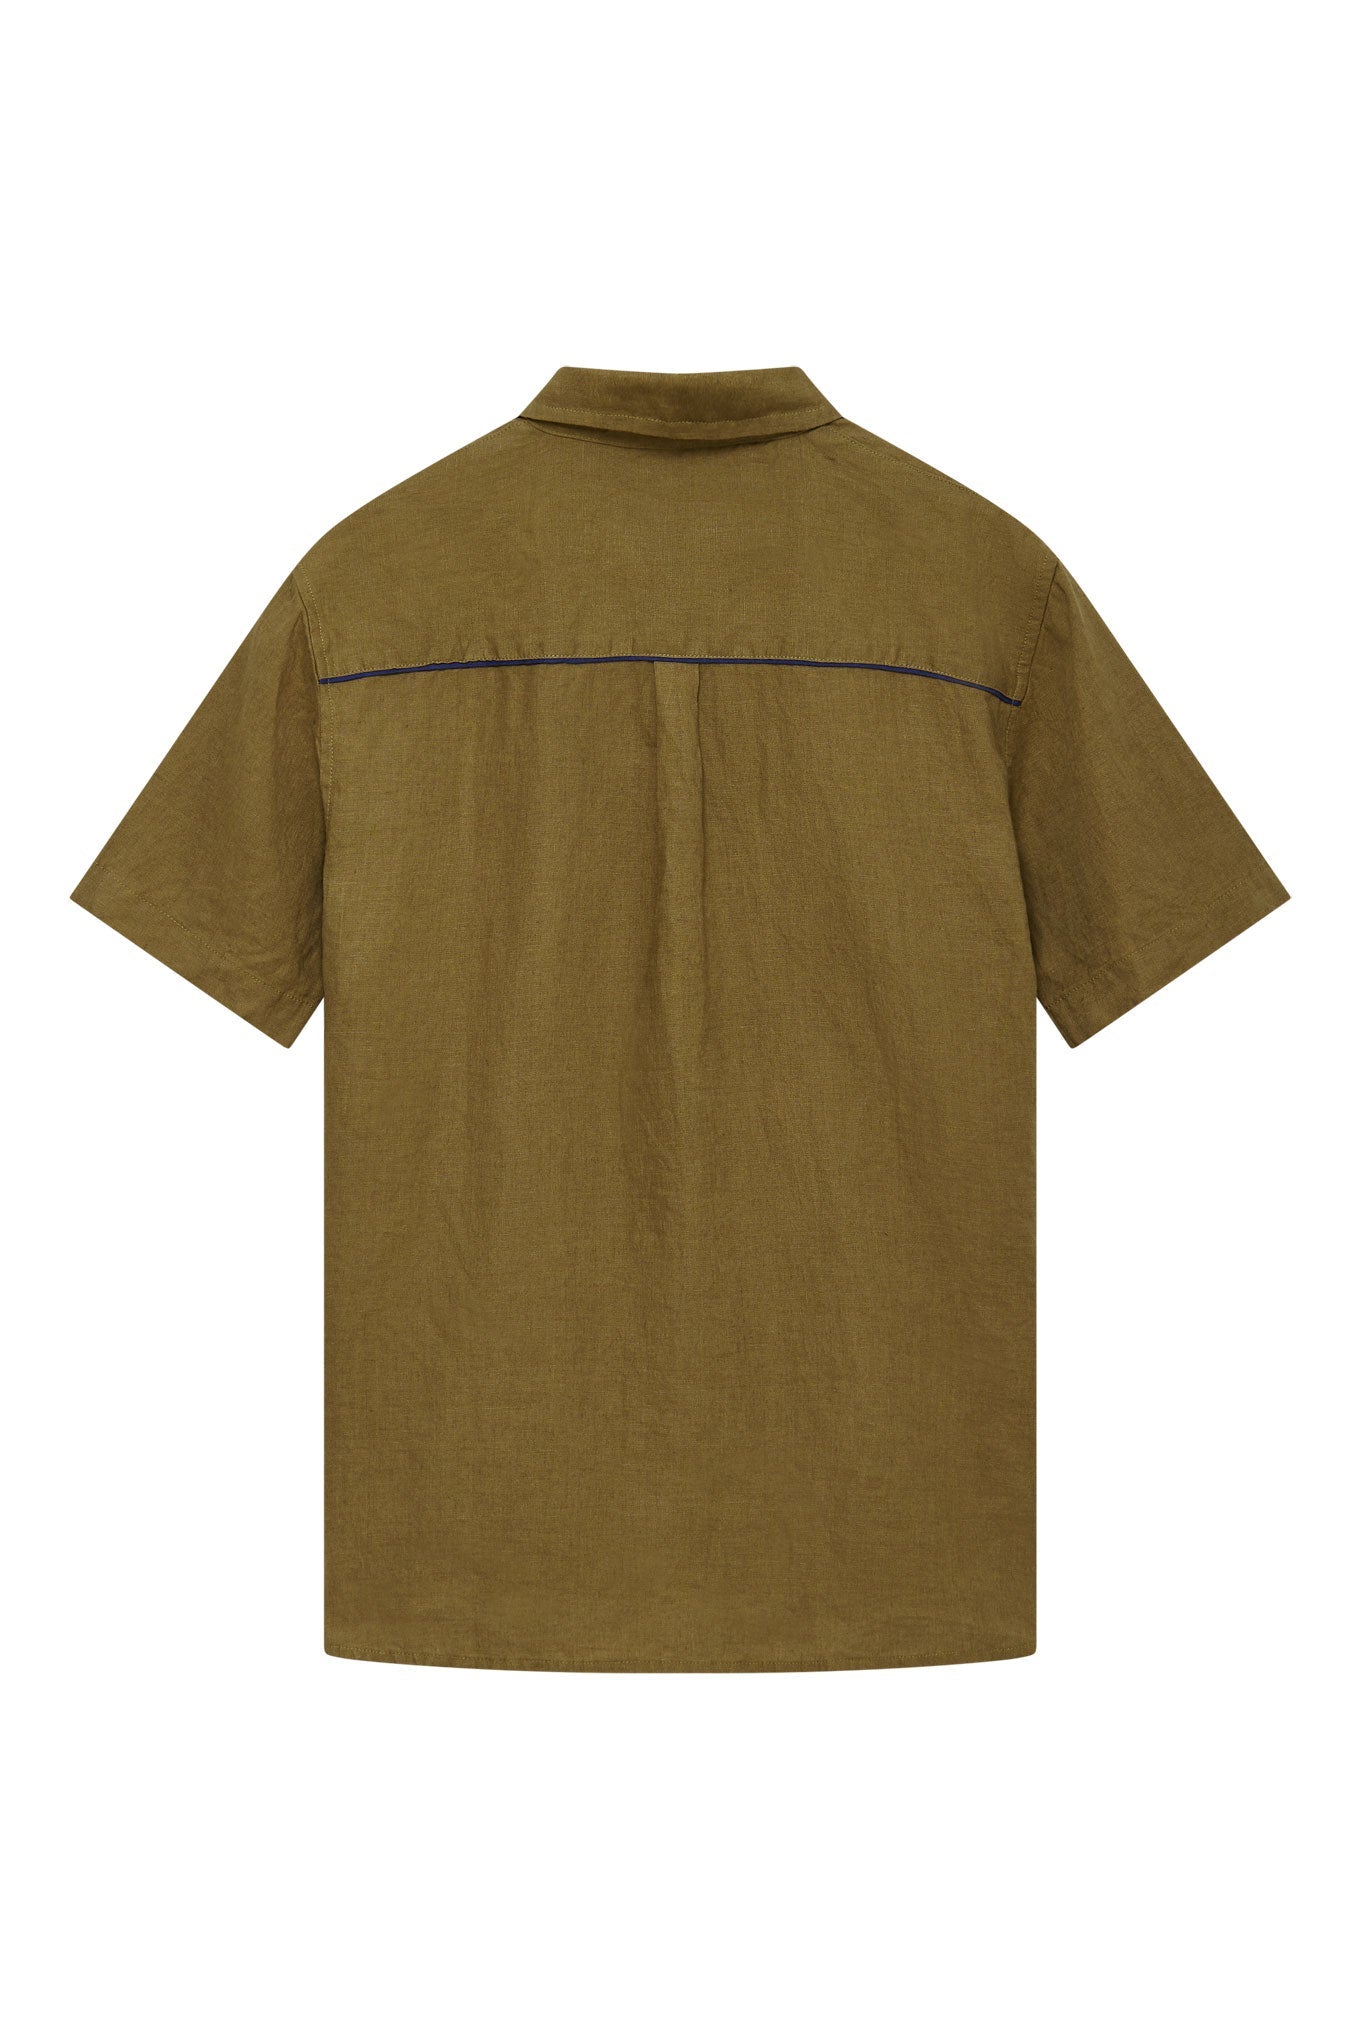 Braunes Hemd DINGWALLS aus 100% Leinen von Komodo